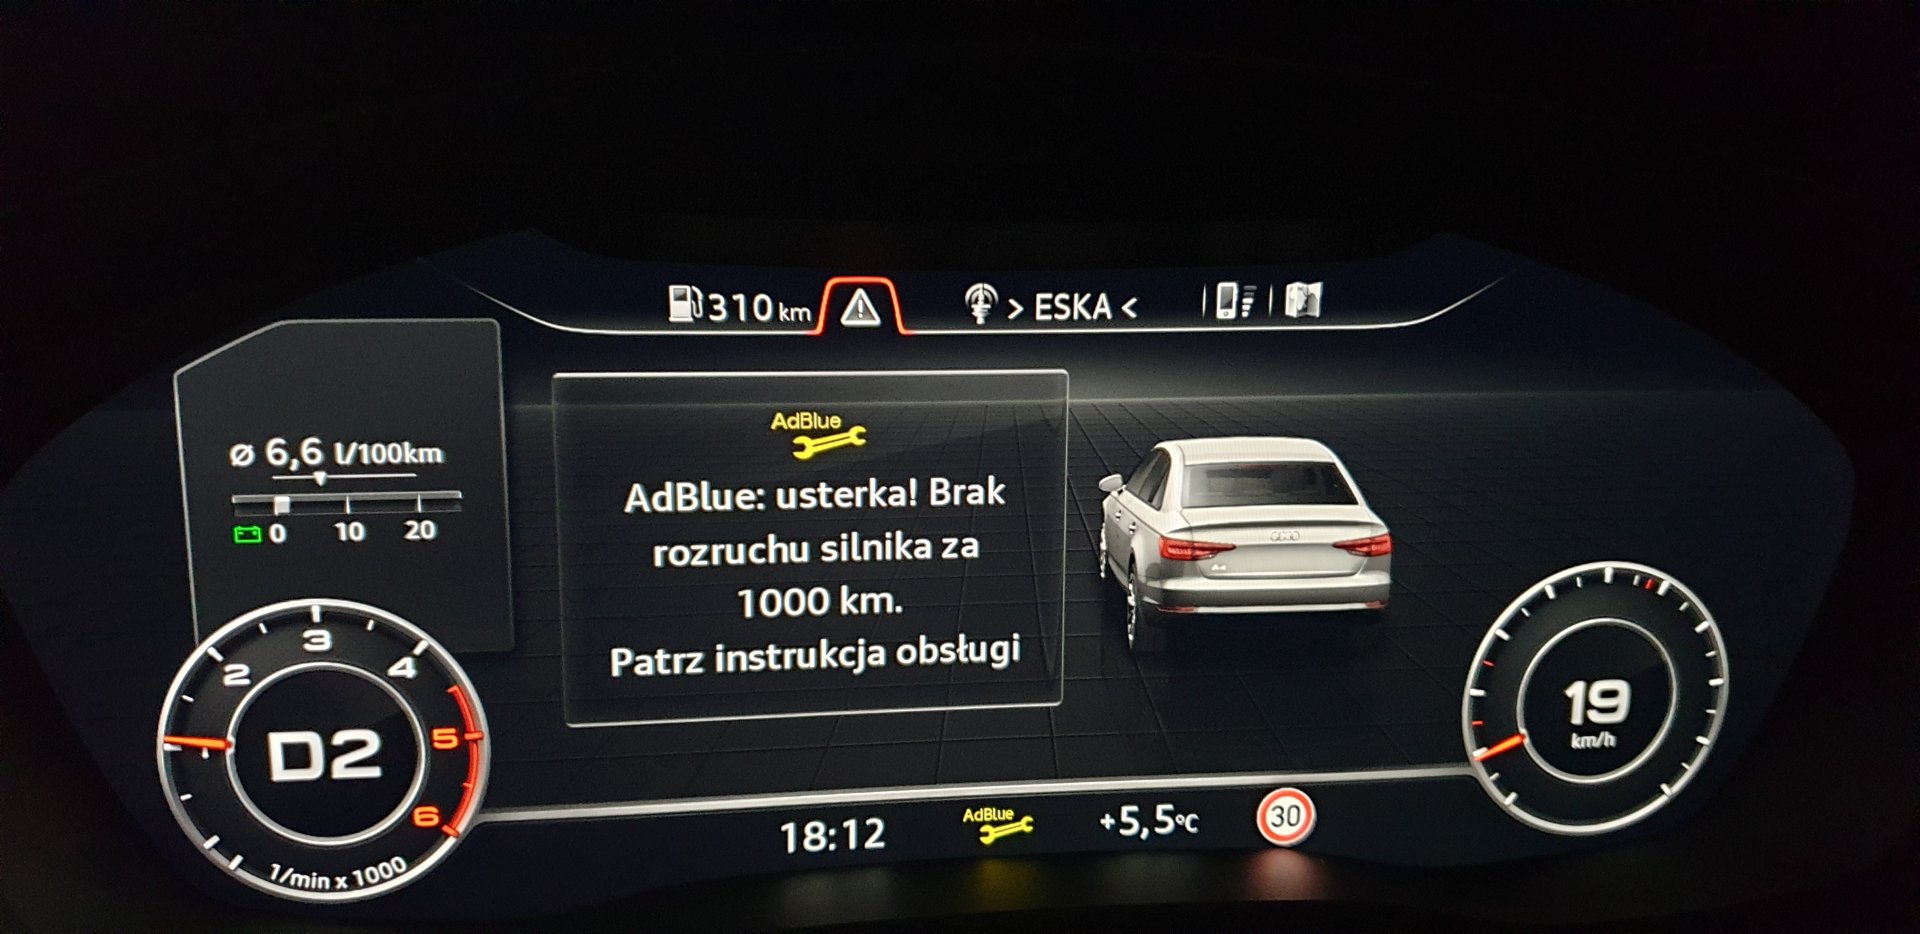 Problem z AdBlue padnieta pompa - 2.0TDI - Audi A4 Klub Polska